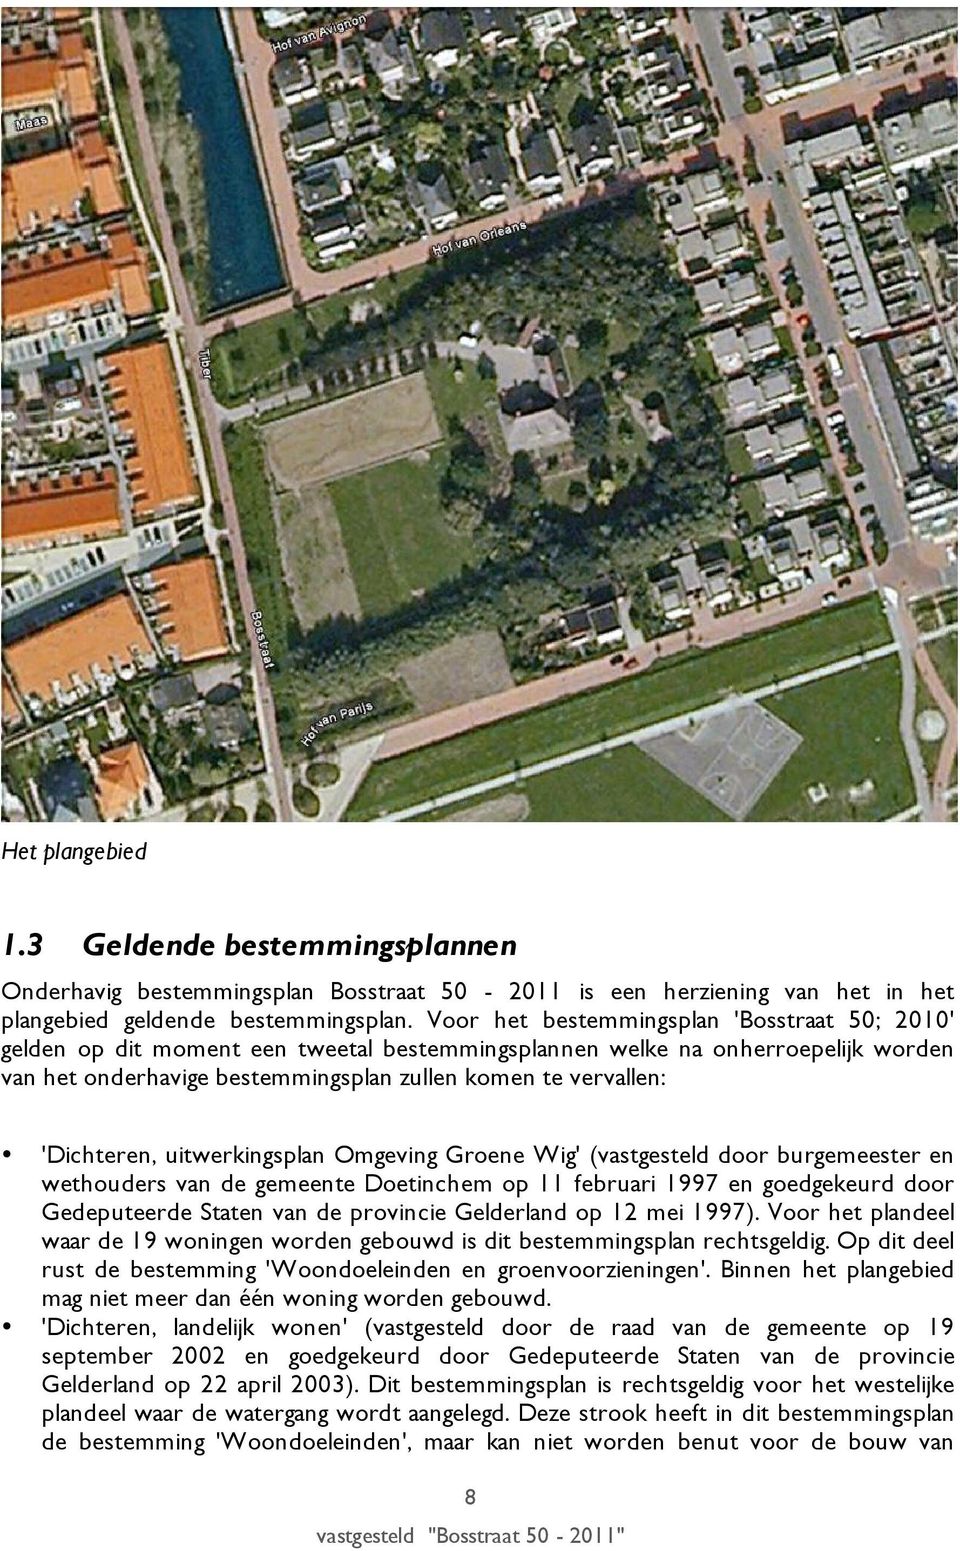 'Dichteren, uitwerkingsplan Omgeving Groene Wig' (vastgesteld door burgemeester en wethouders van de gemeente Doetinchem op 11 februari 1997 en goedgekeurd door Gedeputeerde Staten van de provincie